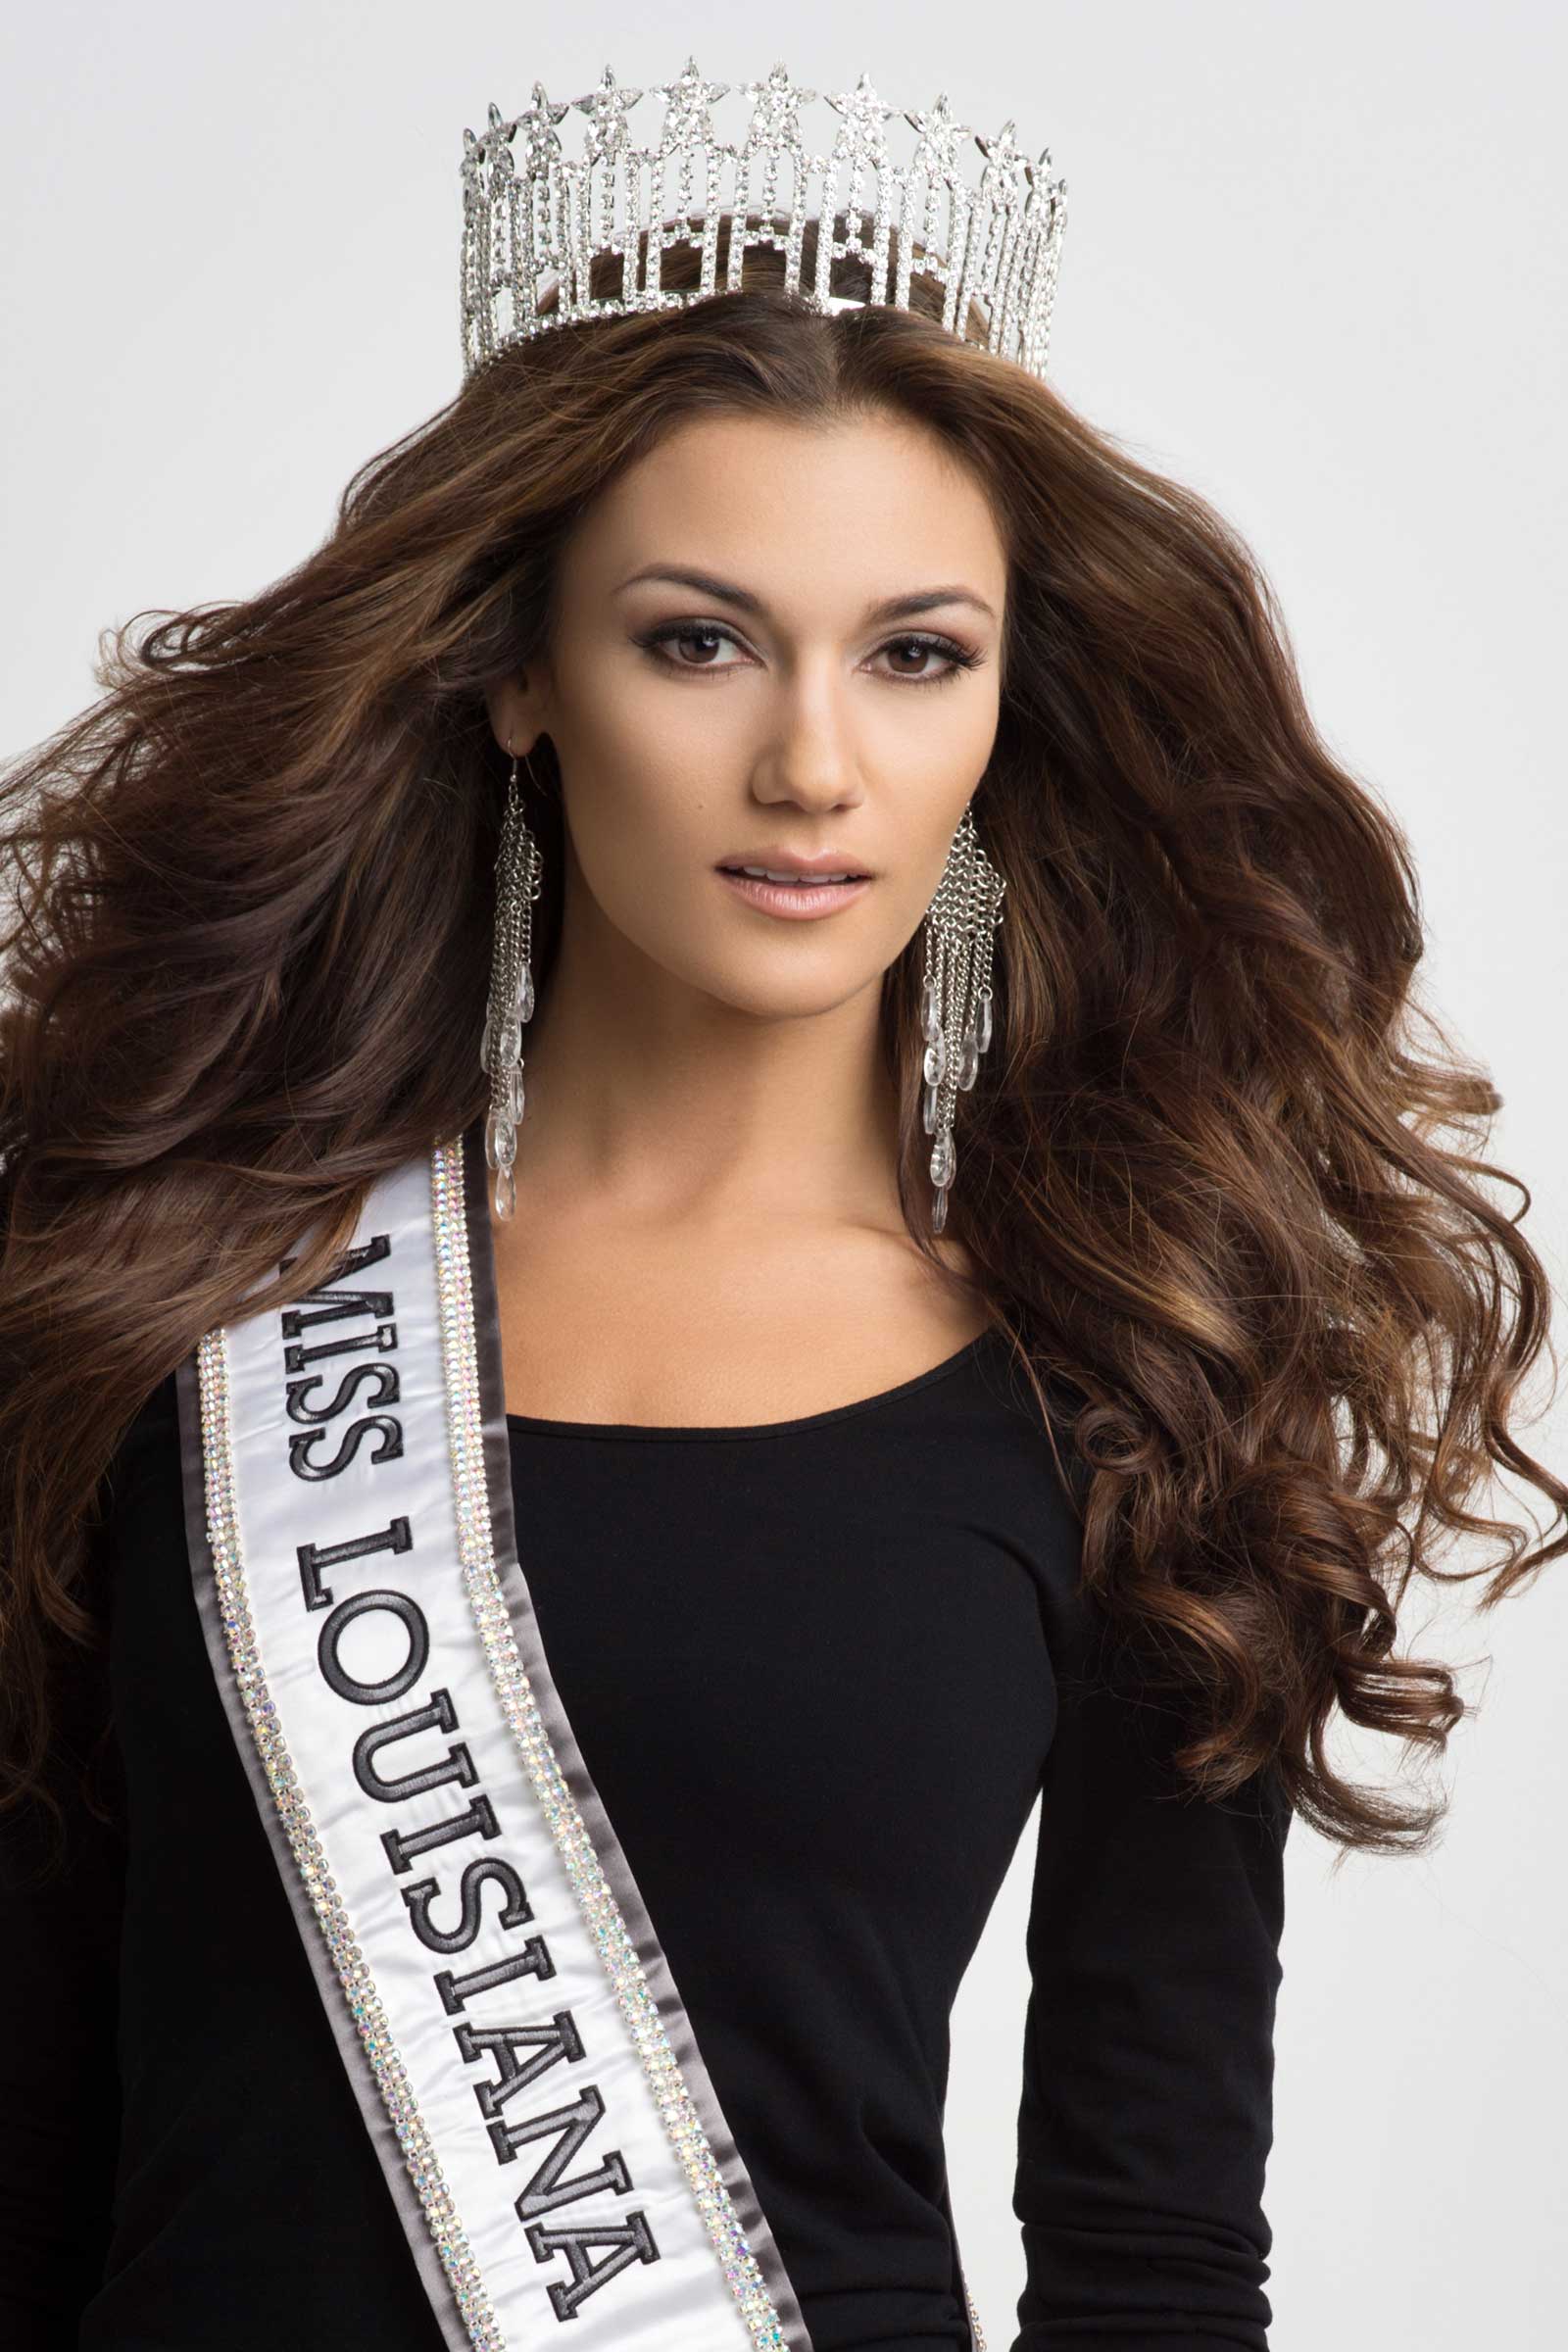 Miss Louisiana USA 2020 Mariah Clayton